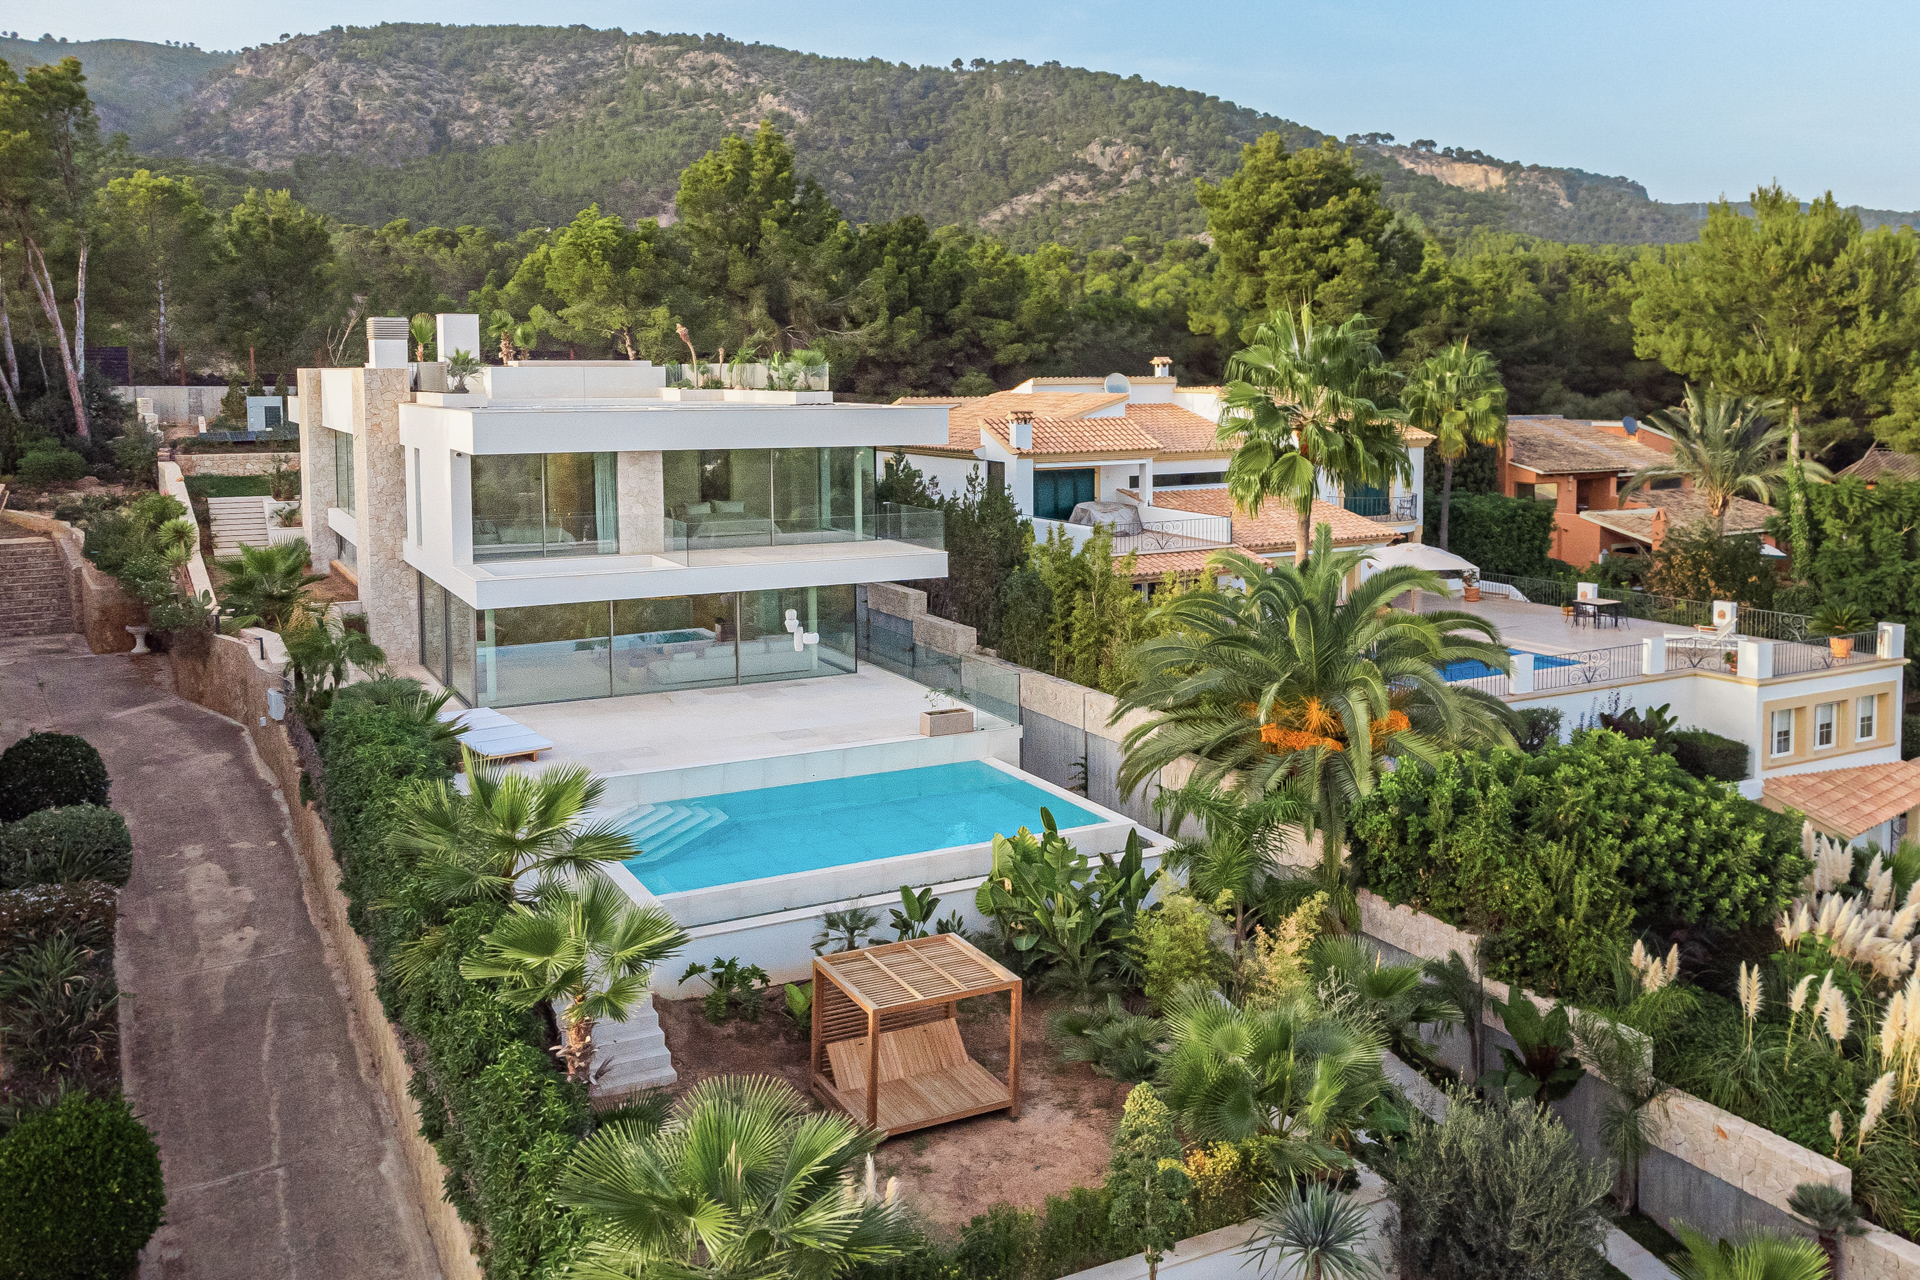 Villa en lujo en venta en Mallorca.